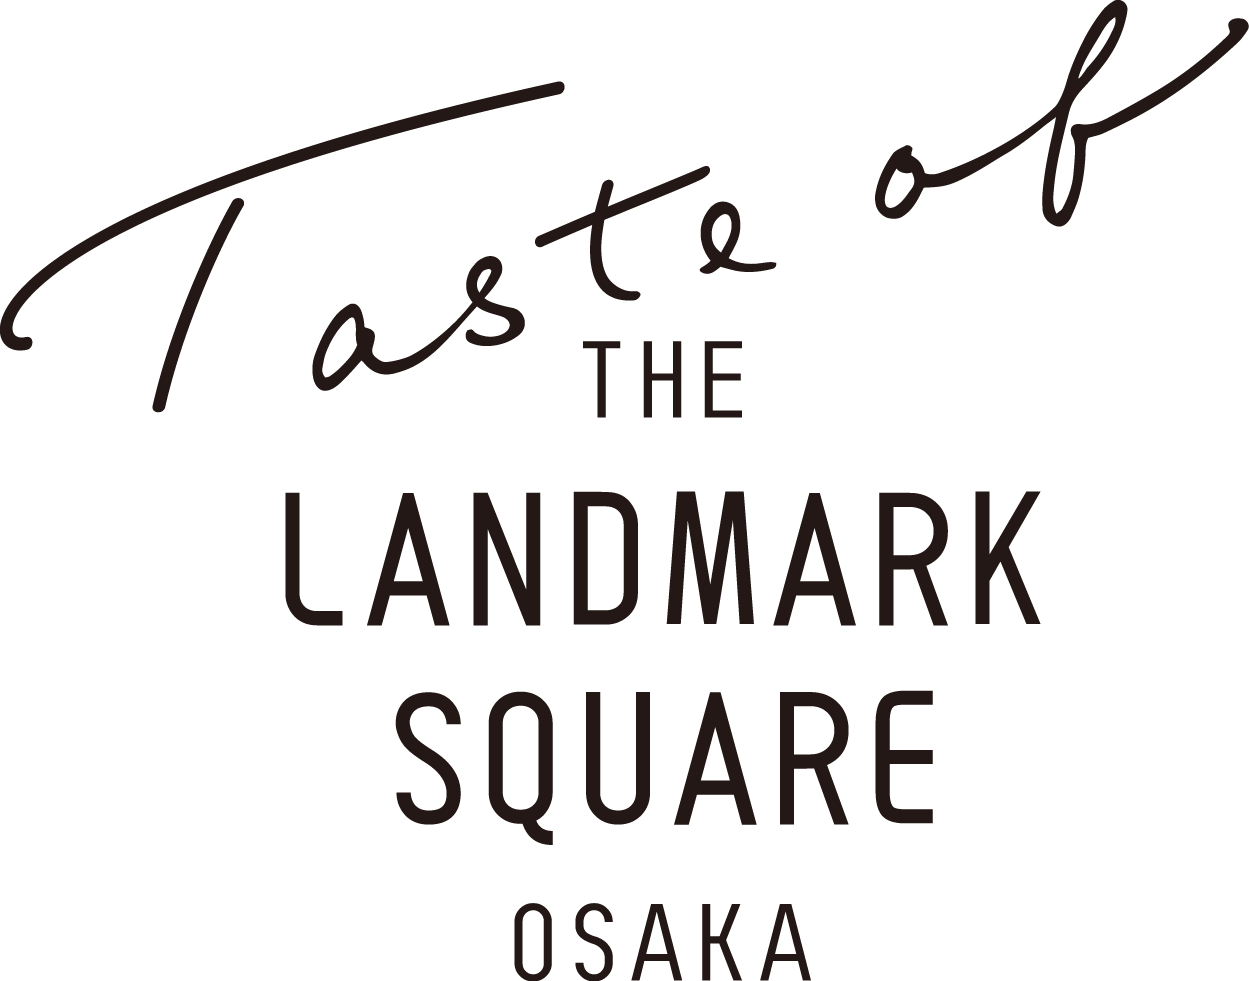 Taste of THE LANDMARK SQUARE OSAKA